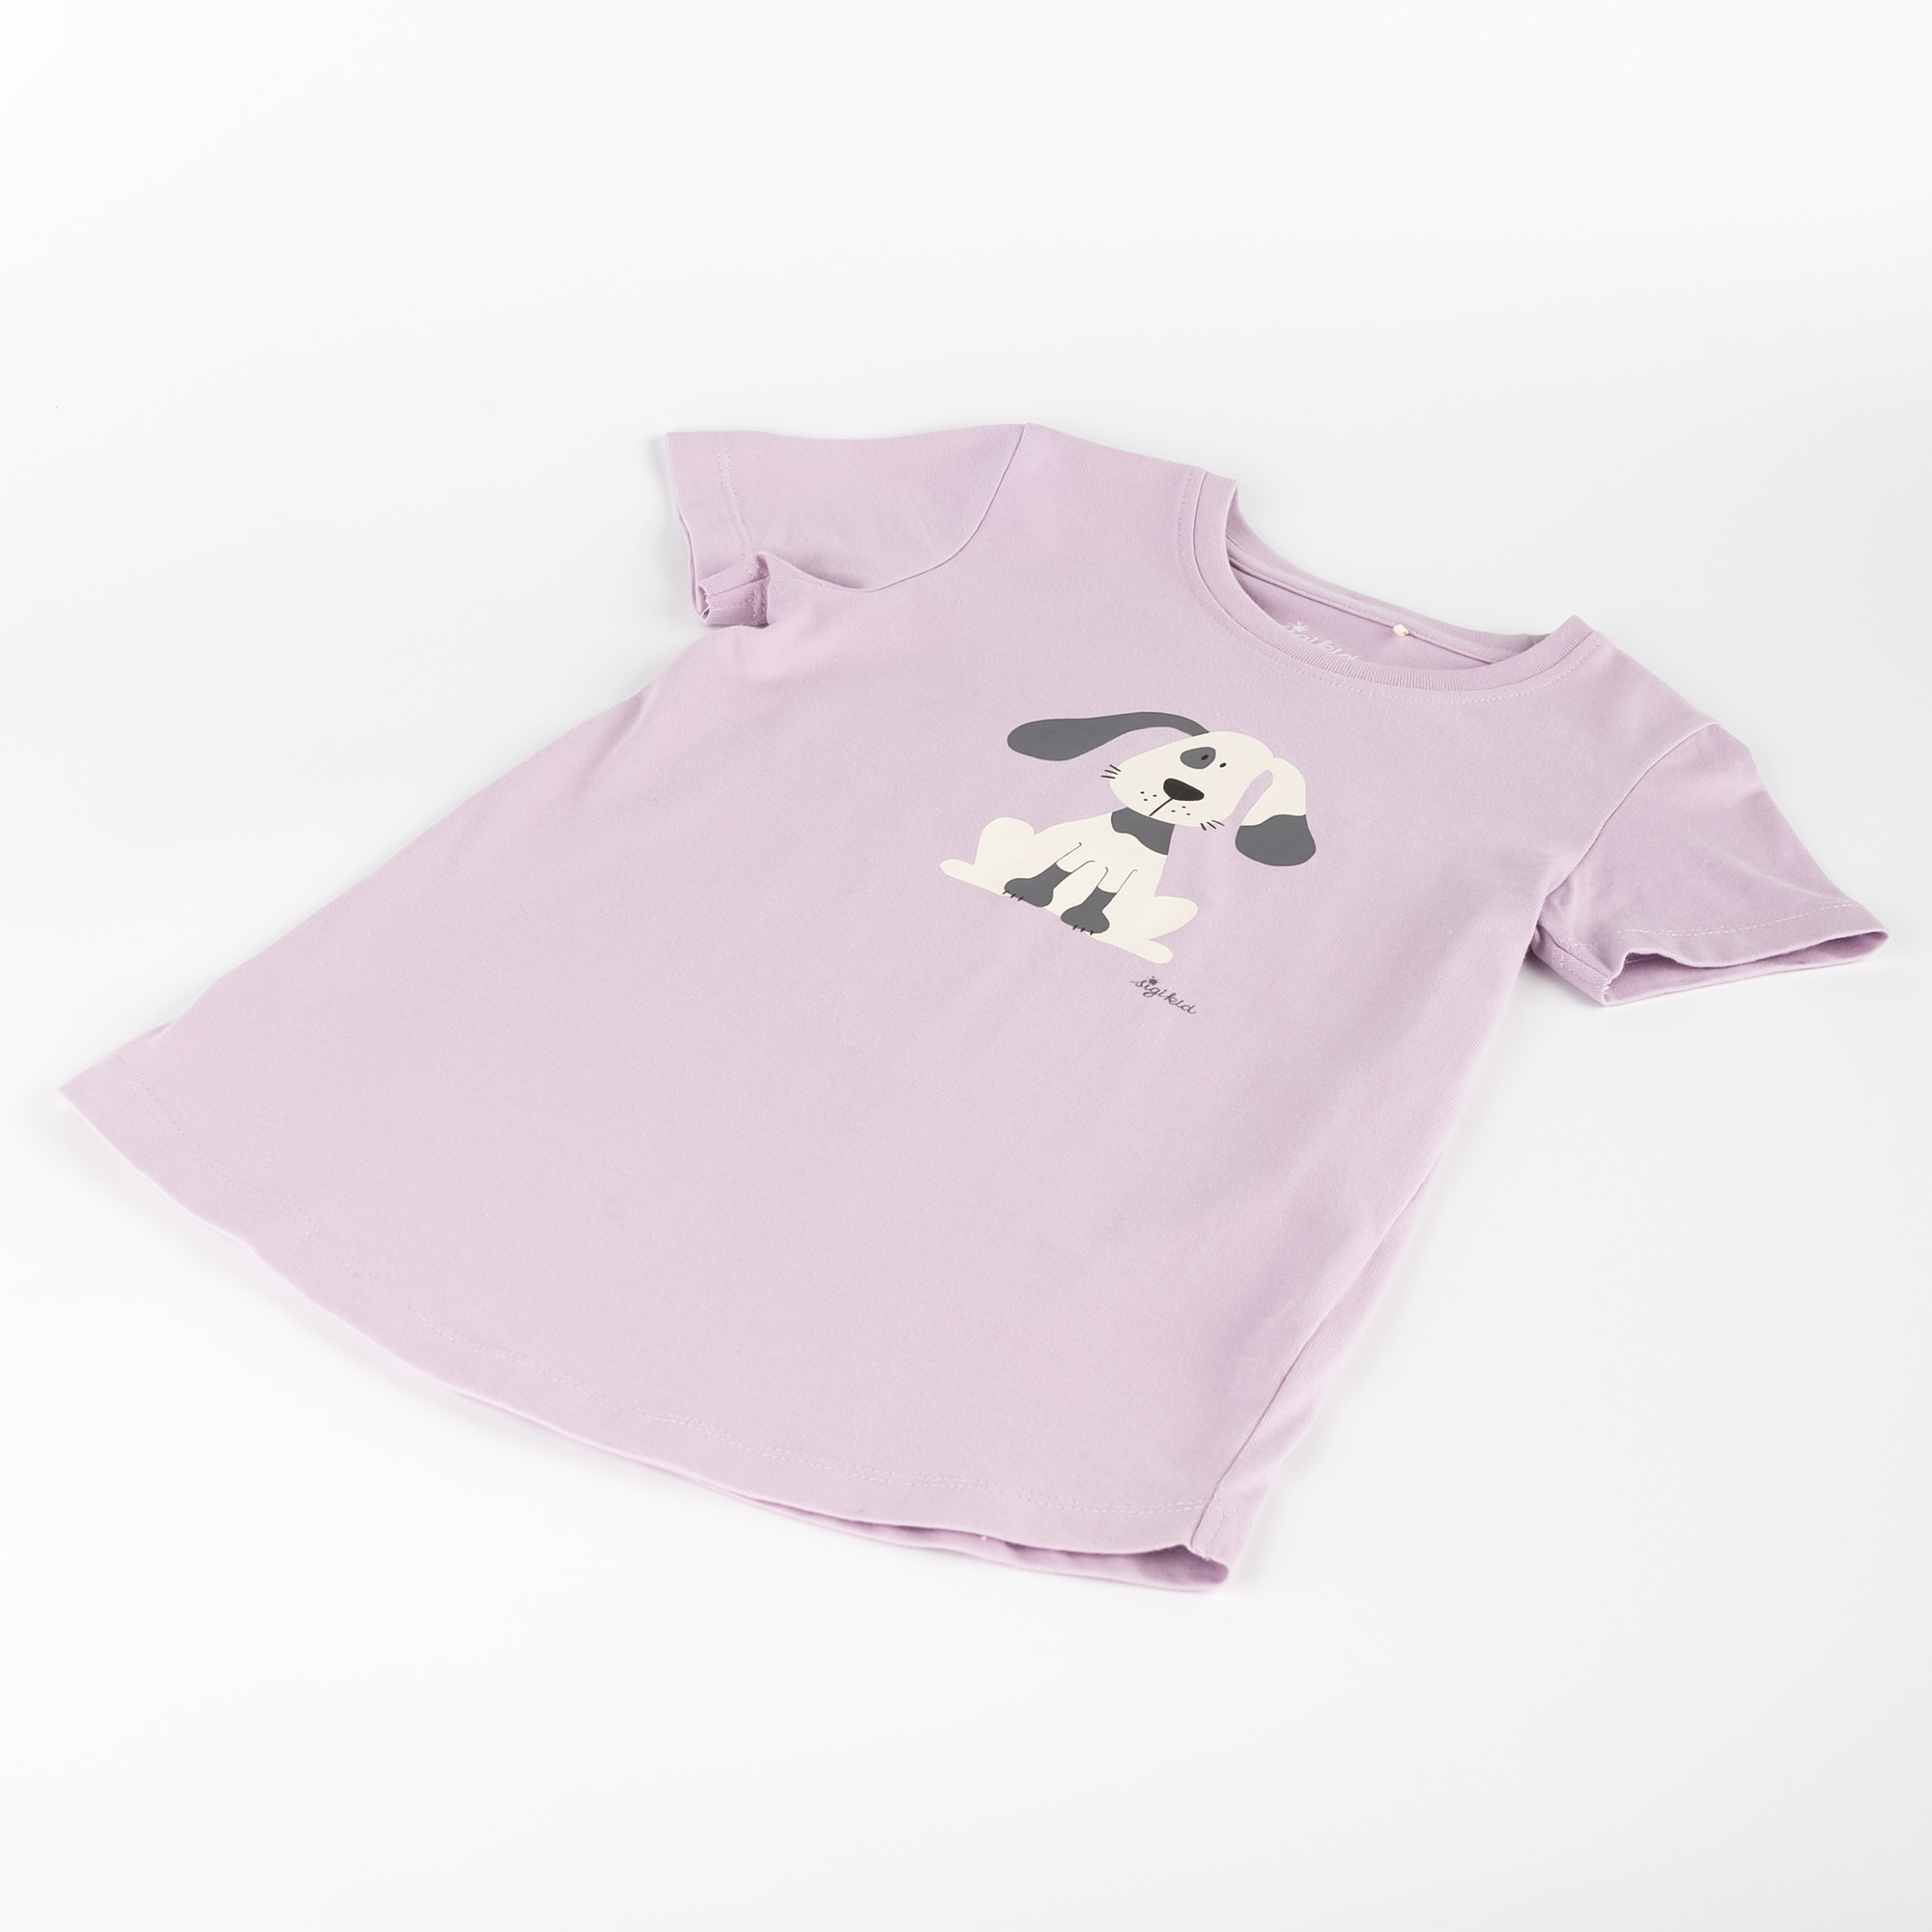 Kinder Pyjama Hund, lila